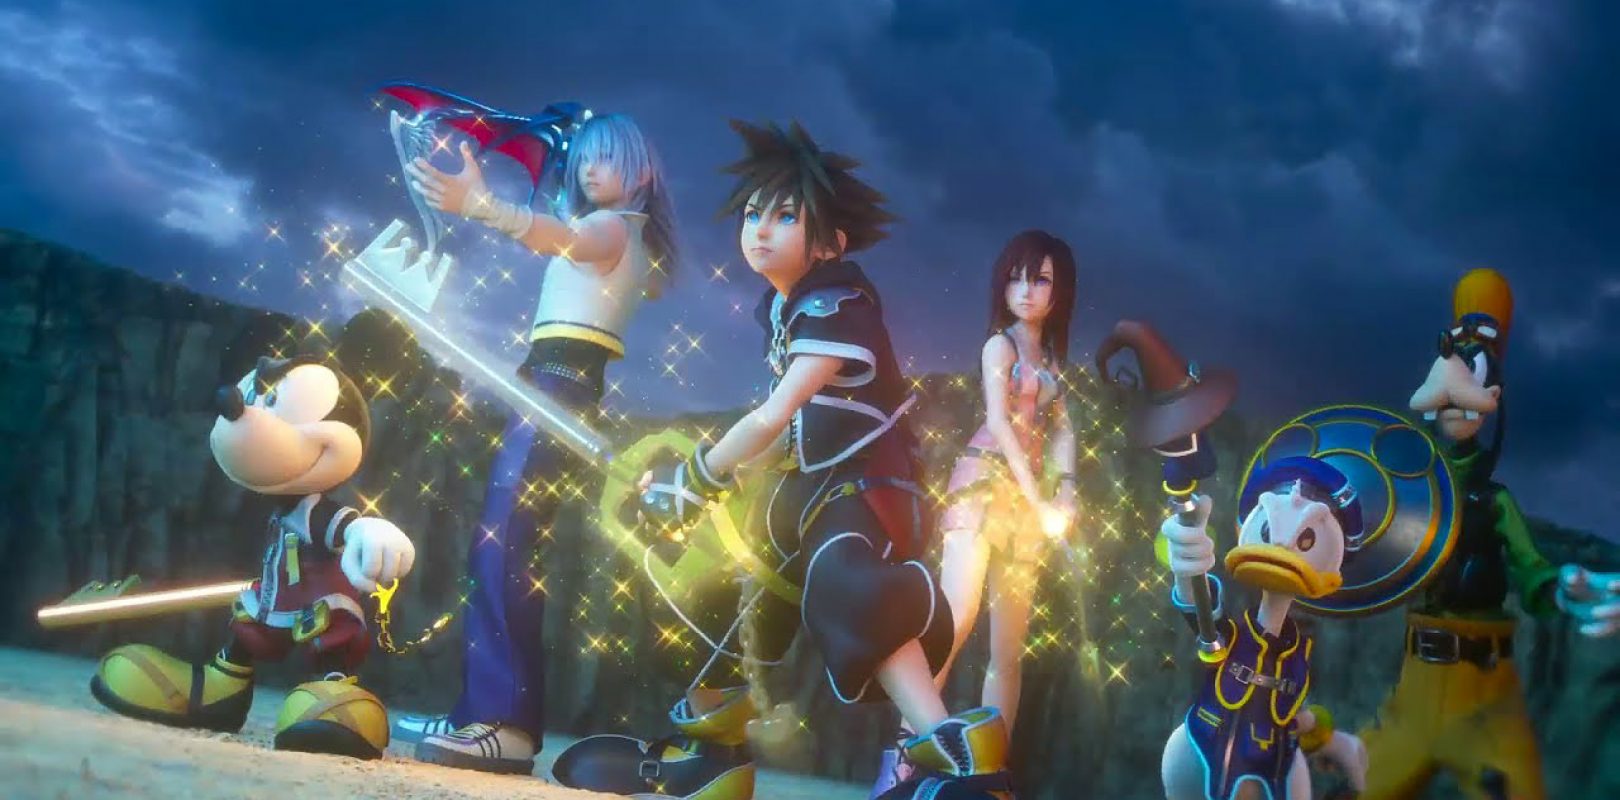 Il brano d'apertura di Kingdom Hearts III di Hikaru Utada e Skrillex è ora disponibile